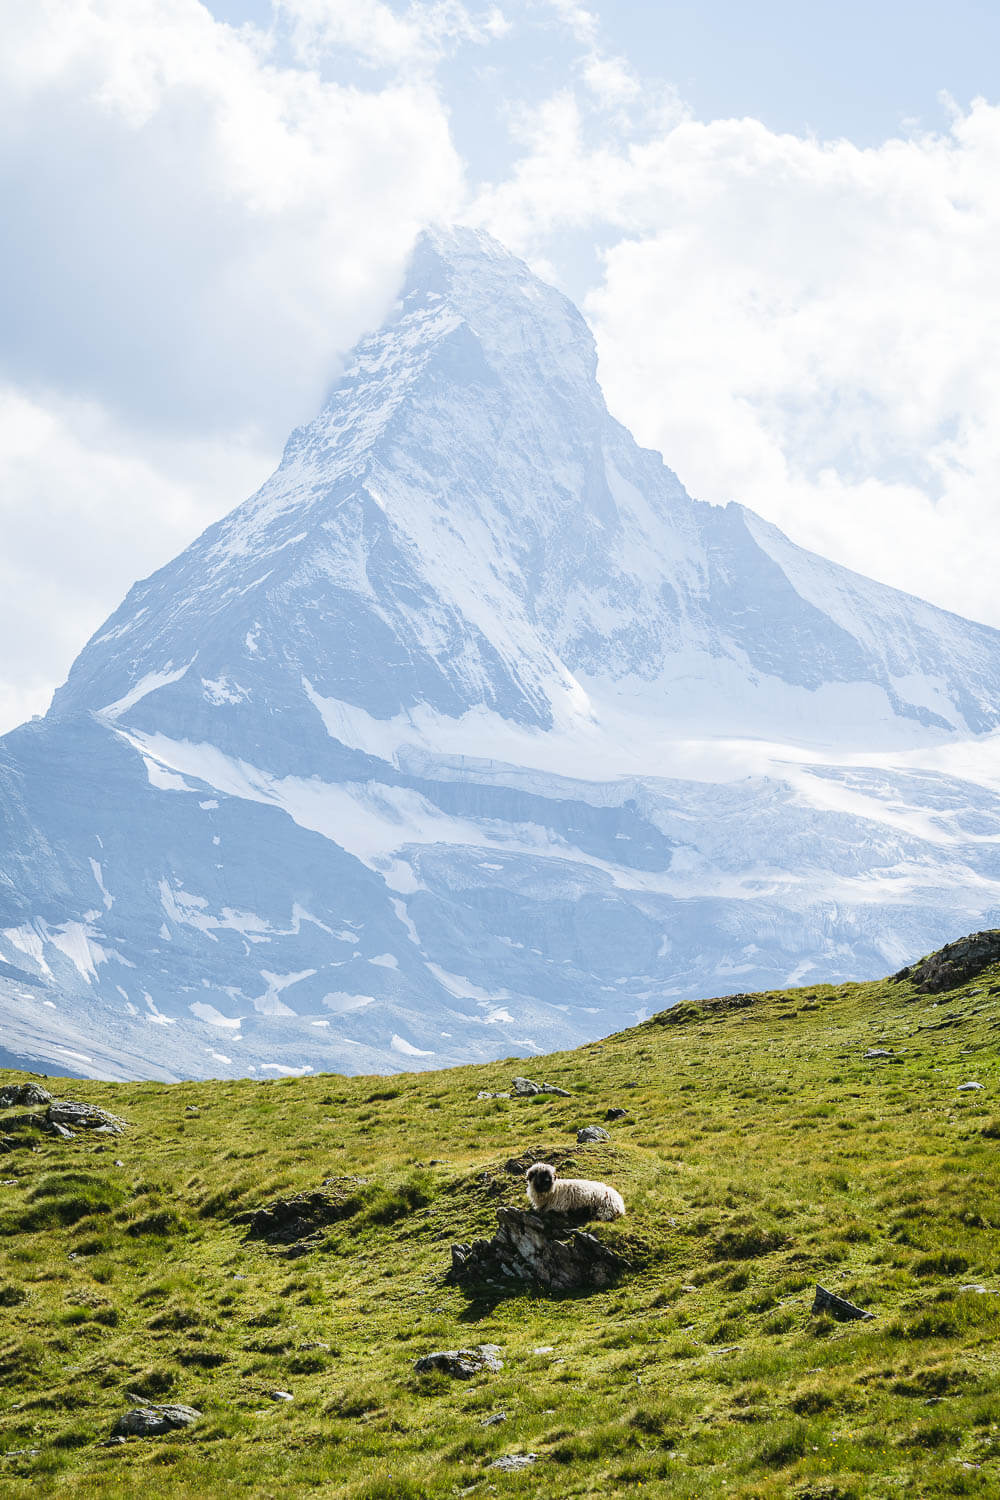 A Valais Blacknose sheep and Matterhorn